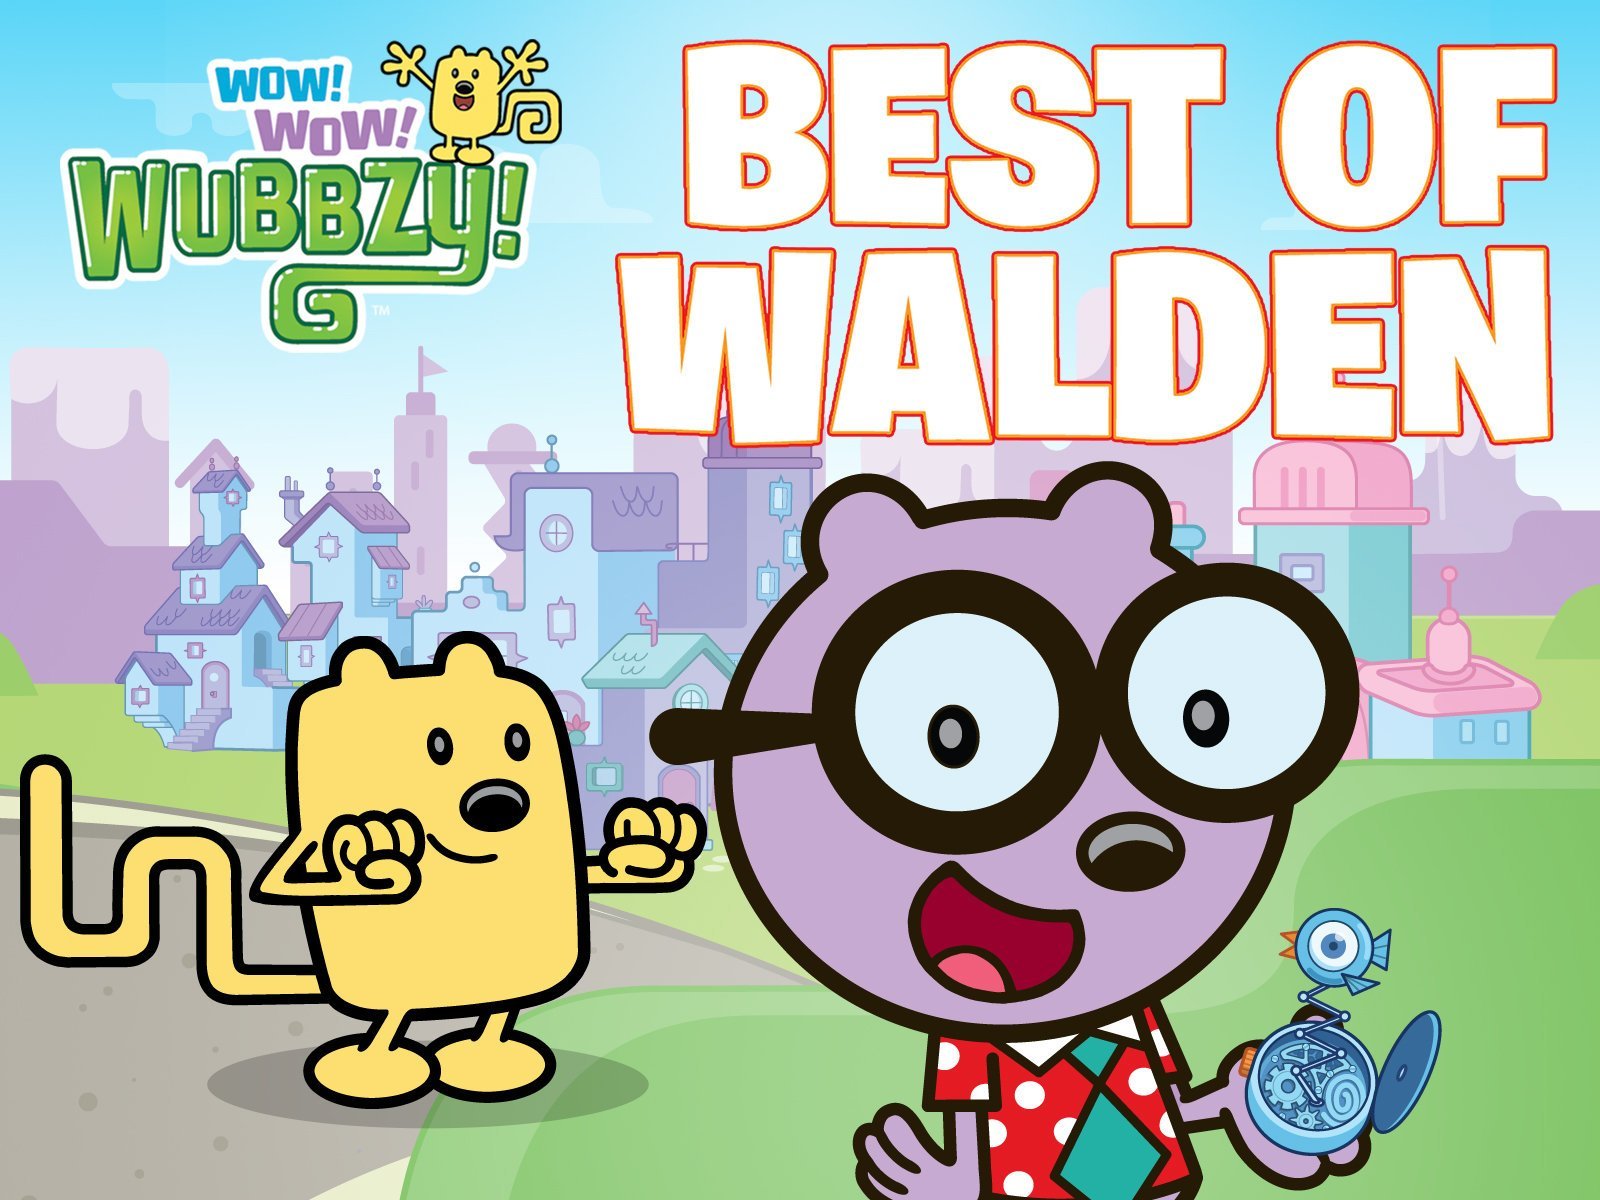 Watch Wow! Wow! Wubbzy!, The Best of Wubbzy, Volume 4